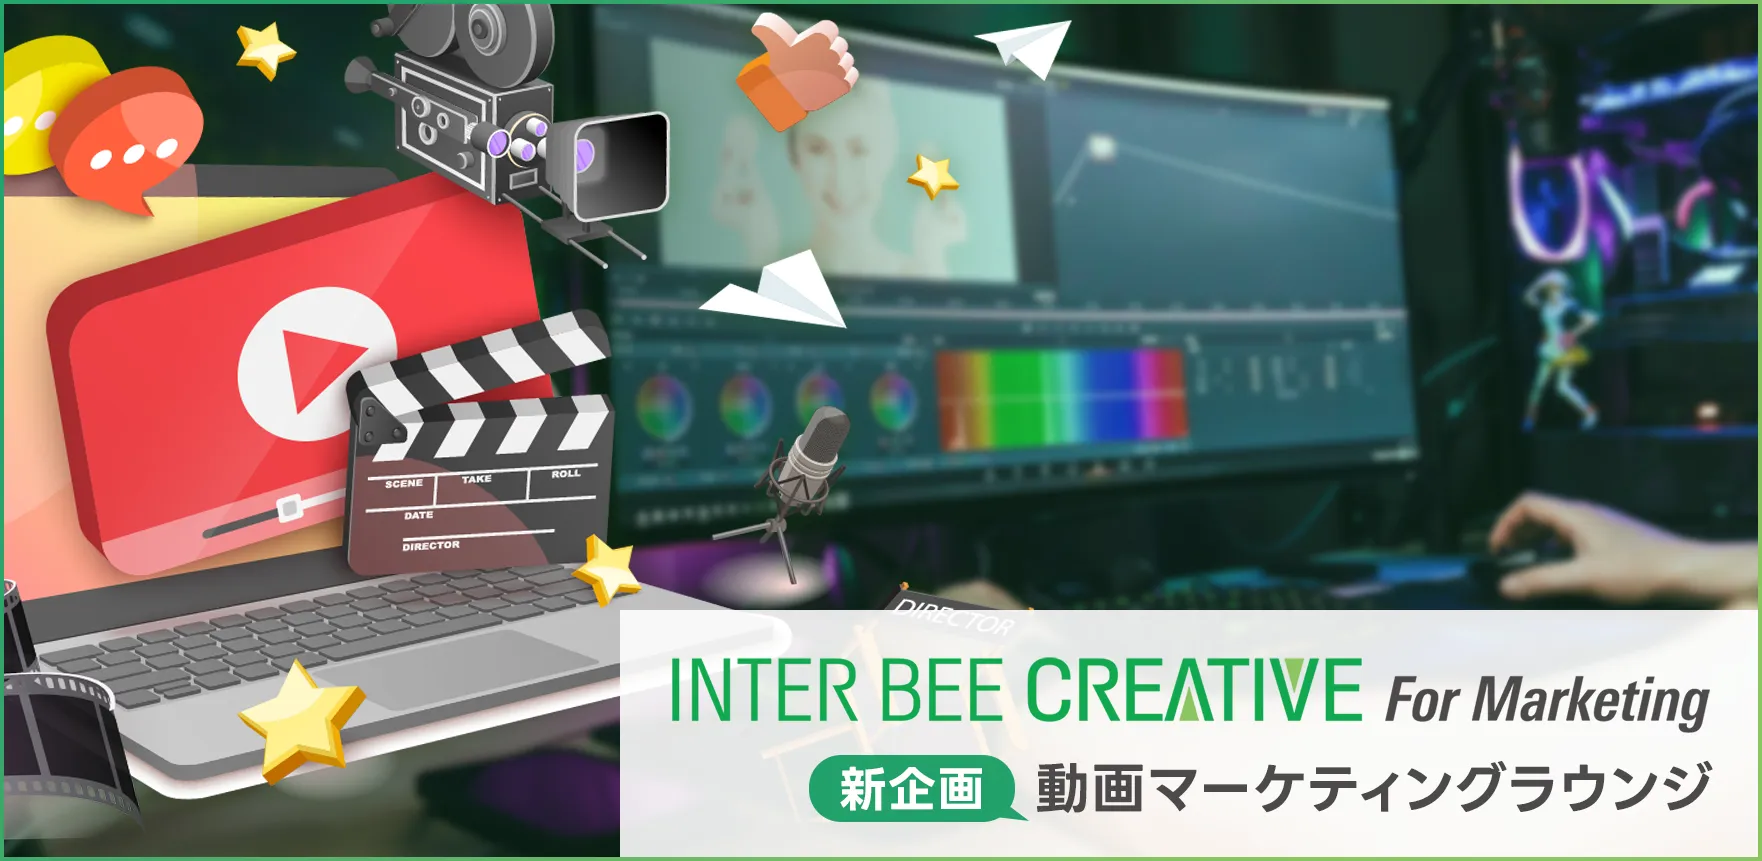 INTER BEE CREATIVE For Marketing 新企画 動画マーケティングラウンジ